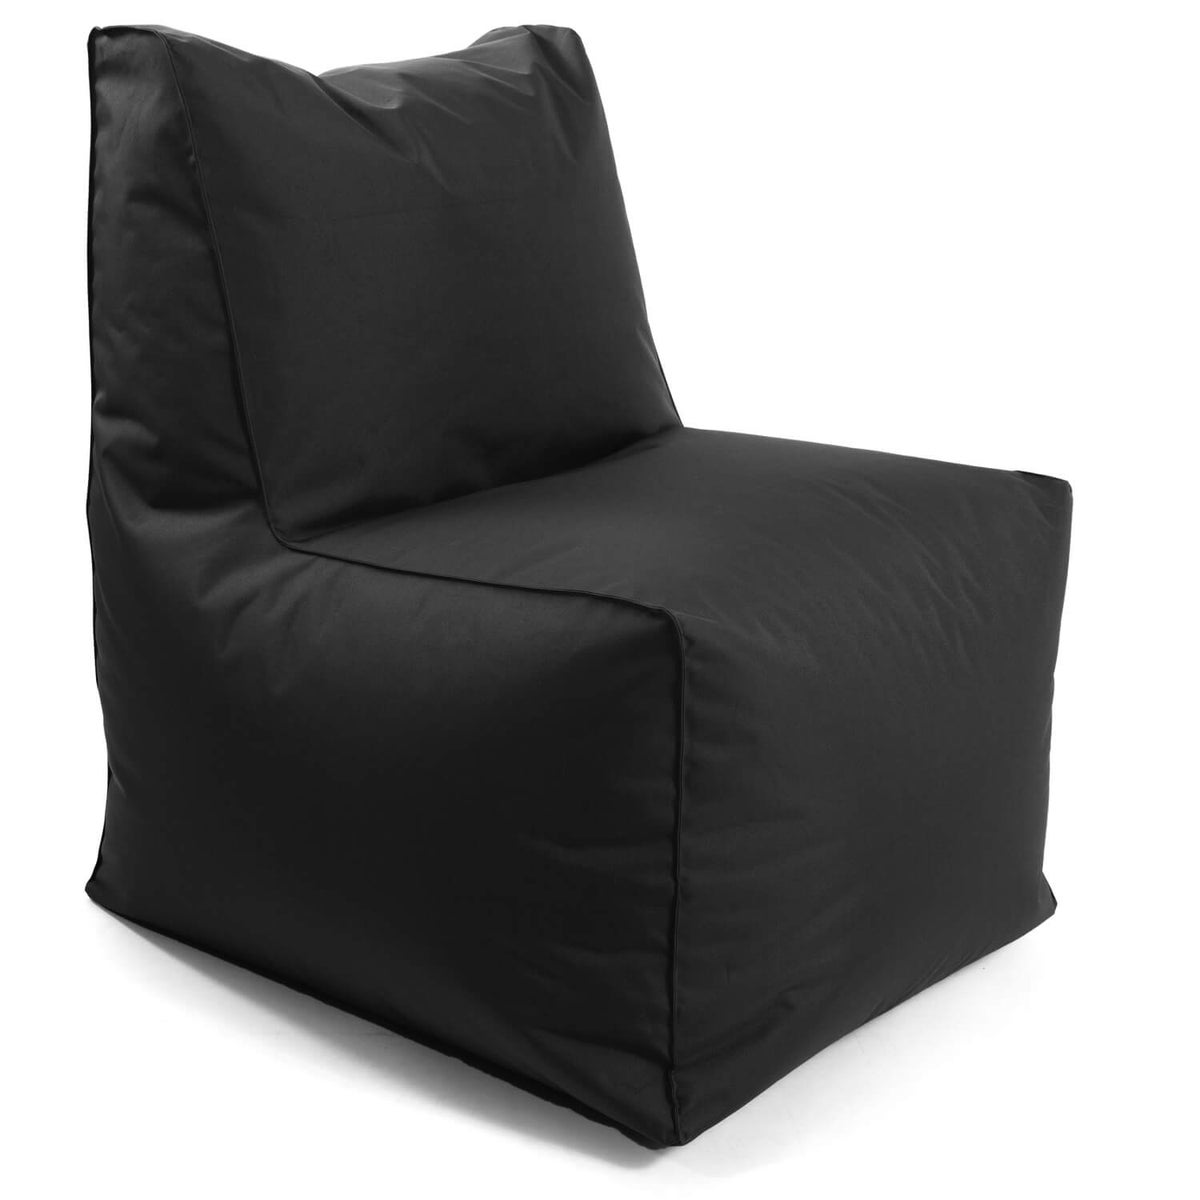 Outdoor Sitzsack-Sessel für Balkon und Garten 'Der Ruhepol', Outdoor Bean Bag mit EPS-Perlen Füllung, Sessel oder leichter Relaxsessel, Made in Germany | Schwarz